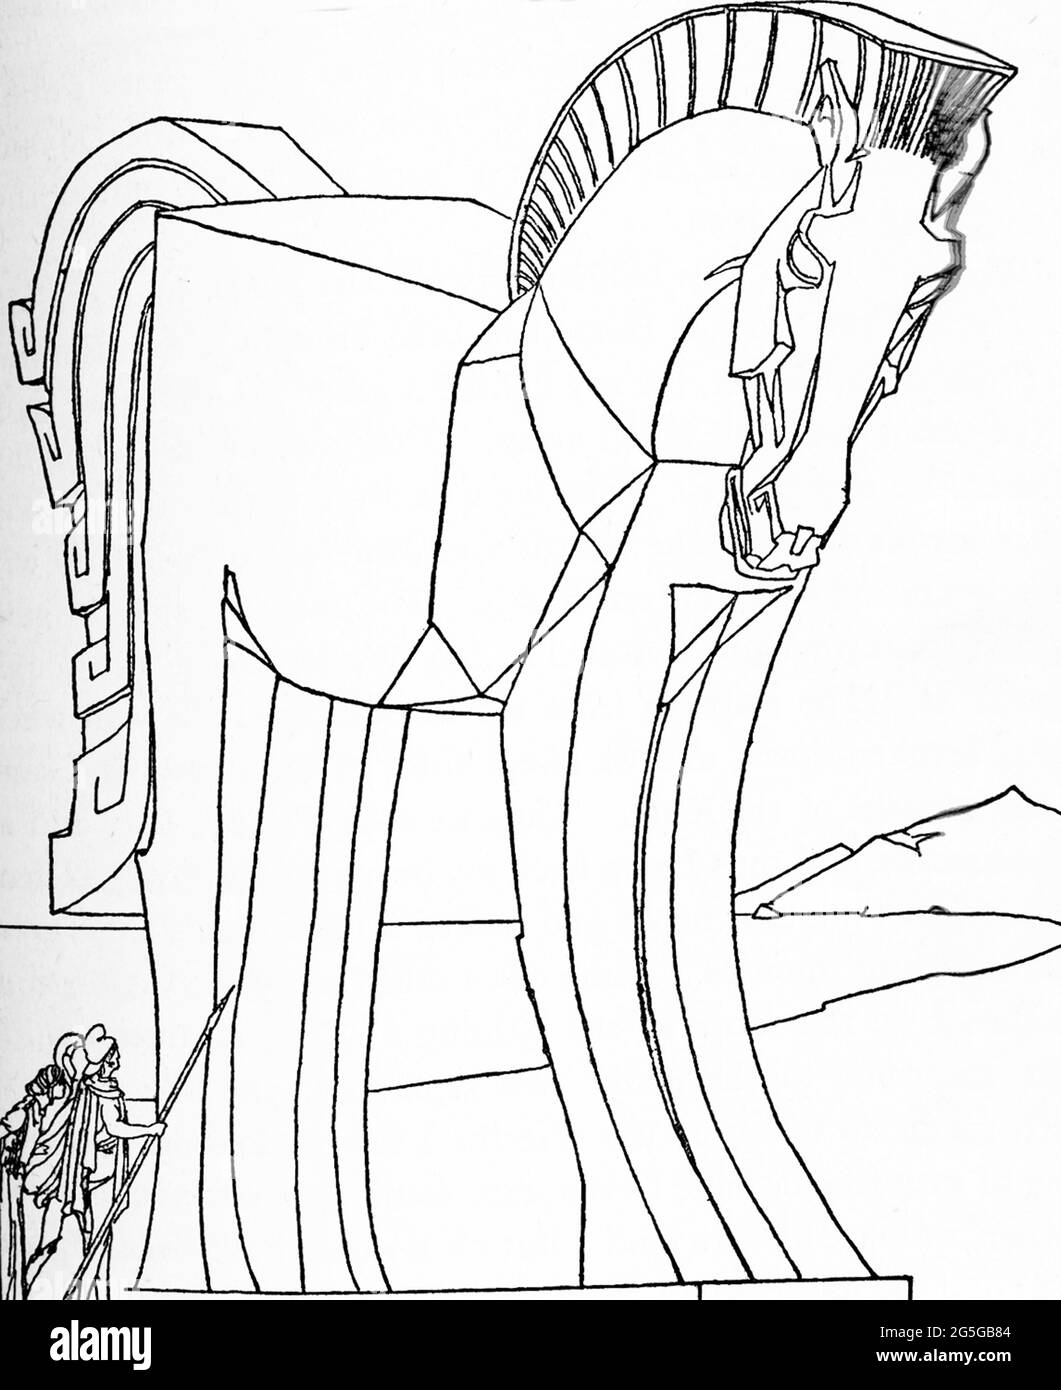 Selon la mythologie grecque et romaine, le Trojan Laocoon a averti ses compatriotes de ne pas apporter le cheval de bois géant (vu ici), doué par les Grecs, dans les murs de troie. Poseidon, le dieu de la mer et une déité qui favorisait les Grecs, envoya des serpents de mer de la mer pour étrangler Laocoon. Le cheval était l'idée du héros grec Odysseus et les Grecs avaient un grec appelé Sinon dire aux chevaux de Troie que si les chevaux de Troie ne l'apportent pas dans les murs de la ville, les Grecs vaincraient les chevaux de Troie. Cette illustration du début des années 1900 montre les chevaux de Troie qui se penaient sur la question du cheval Banque D'Images